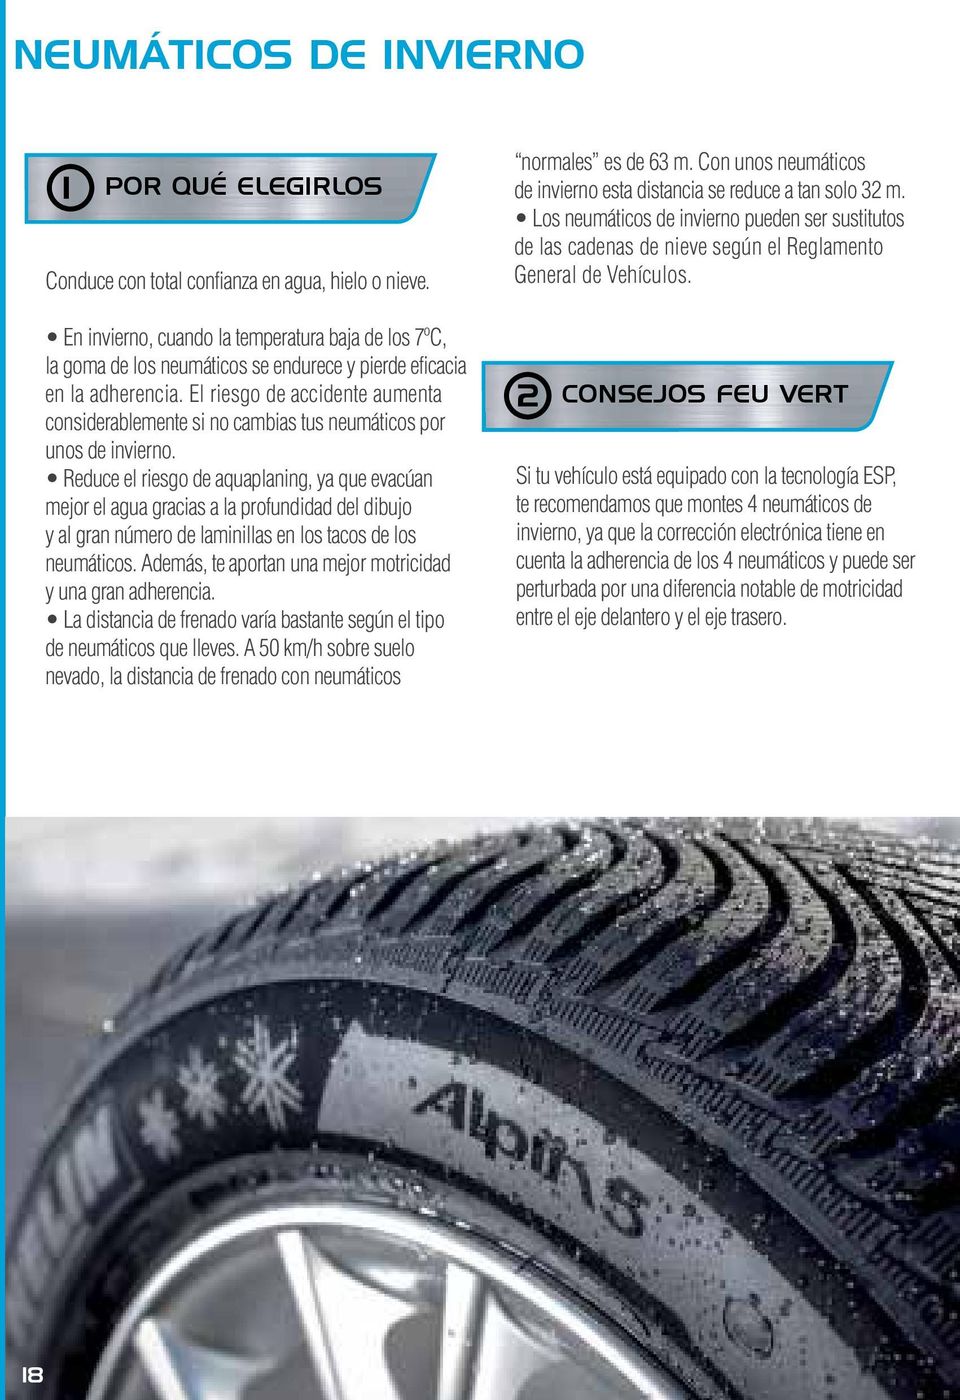 El riesgo de accidente aumenta considerablemente si no cambias tus neumáticos por unos de invierno.